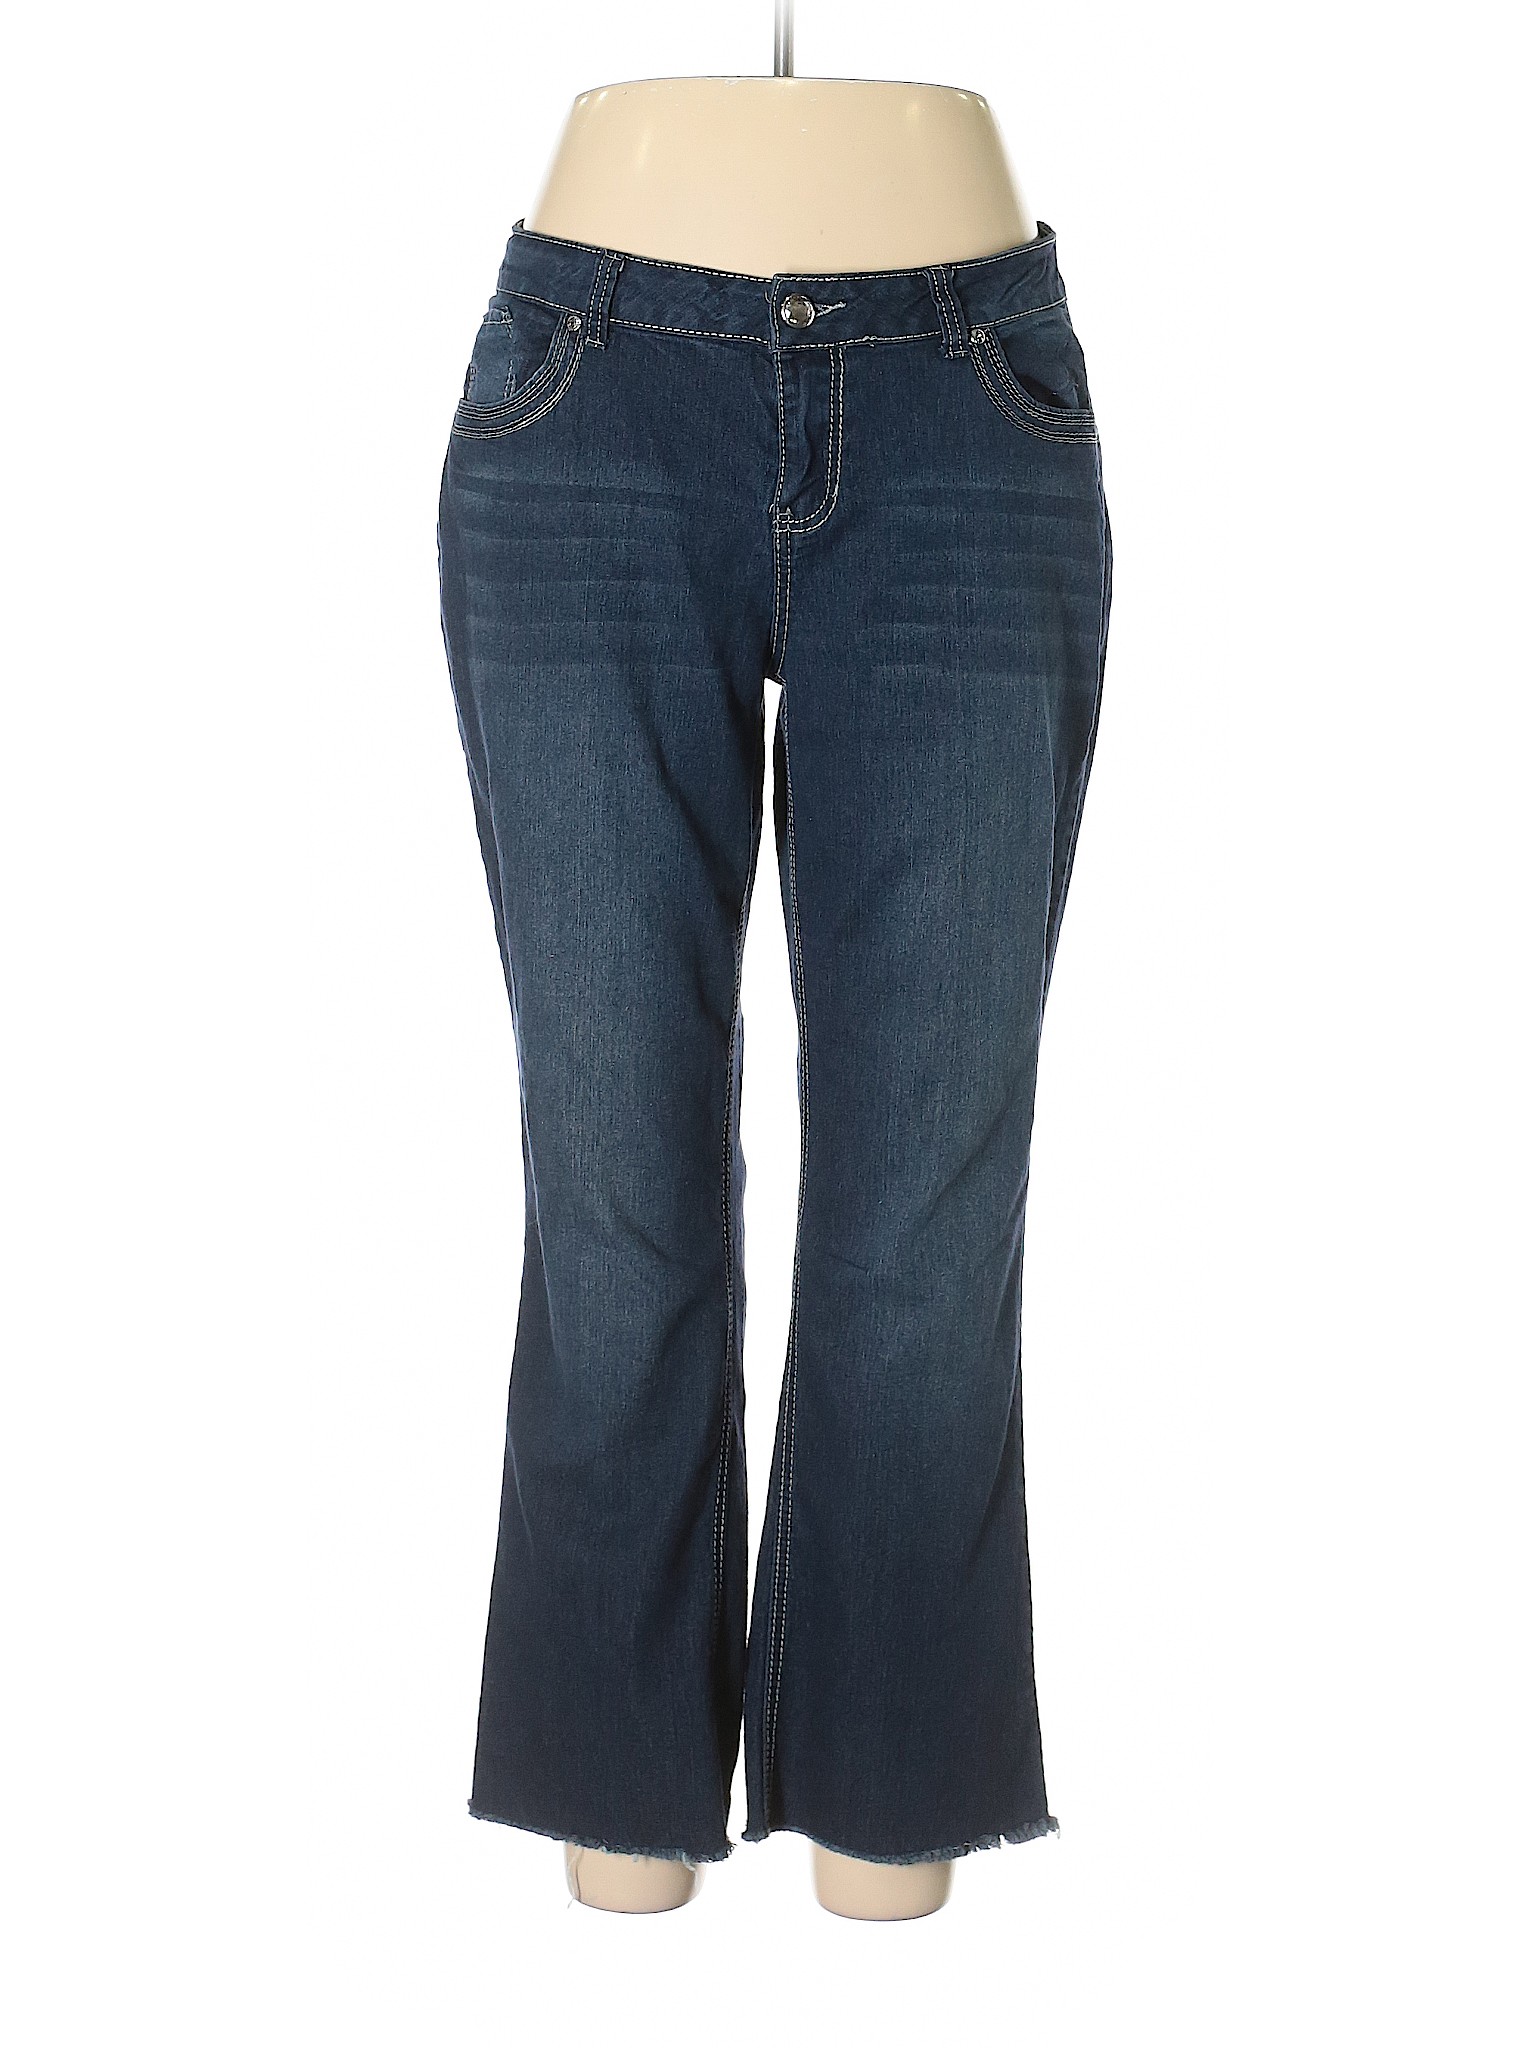 Deja Bleu Solid Blue Jeans Size 14 - 58% off | thredUP